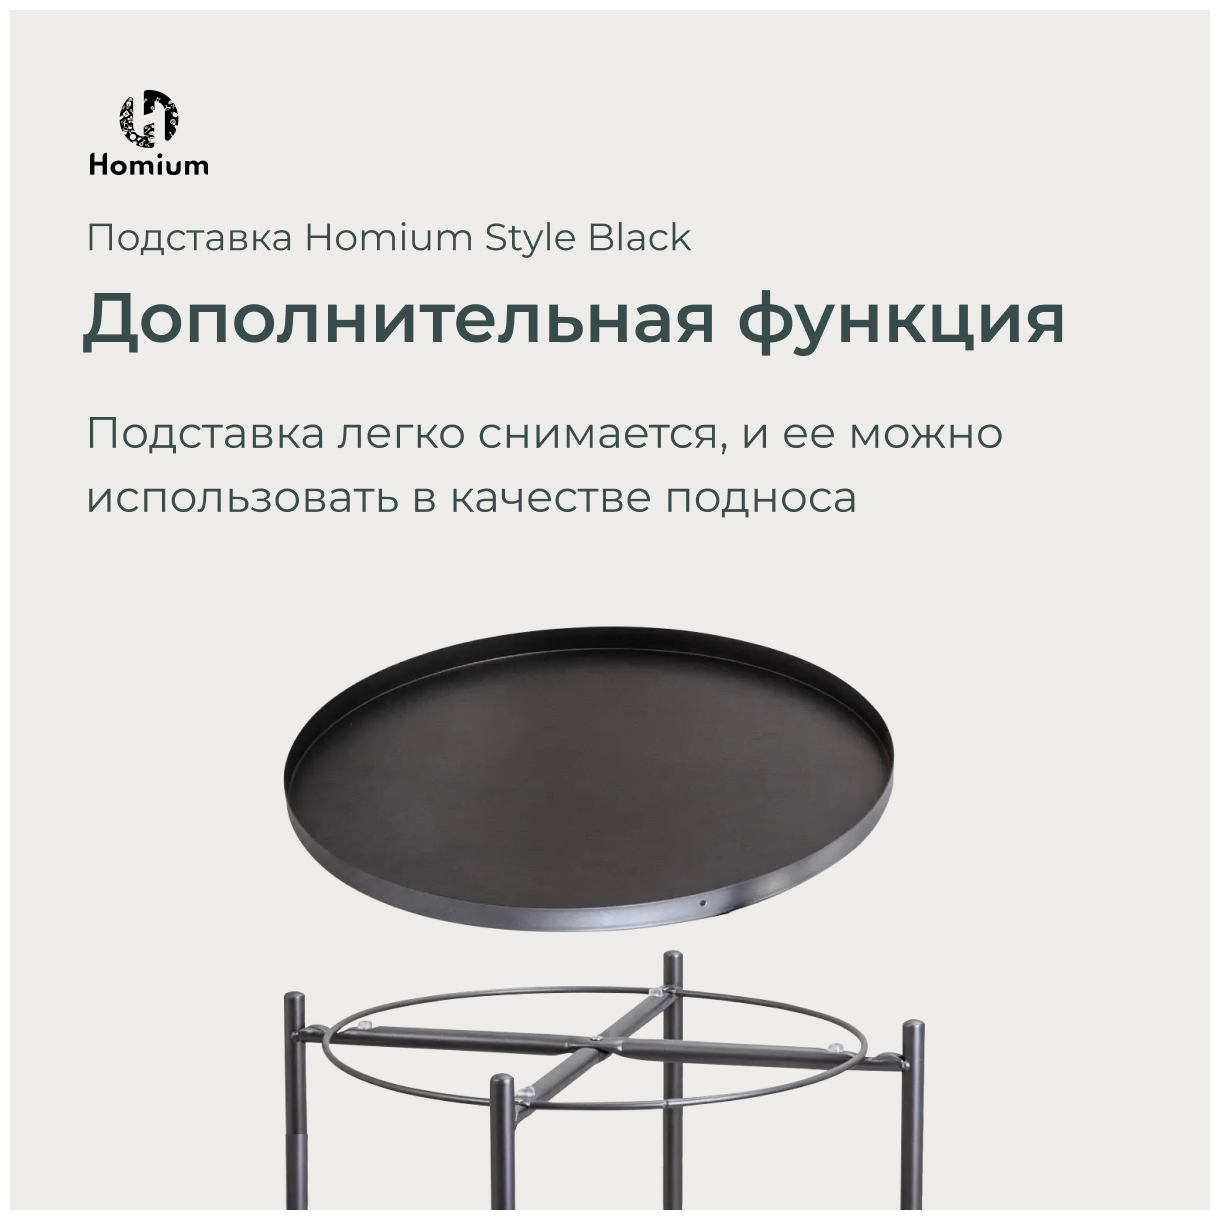 Стол журнальный кофейный лофт с корзиной, приставной круглый металлический столик, поднос Homium ZDK Style, цвет черный (44*44*52)